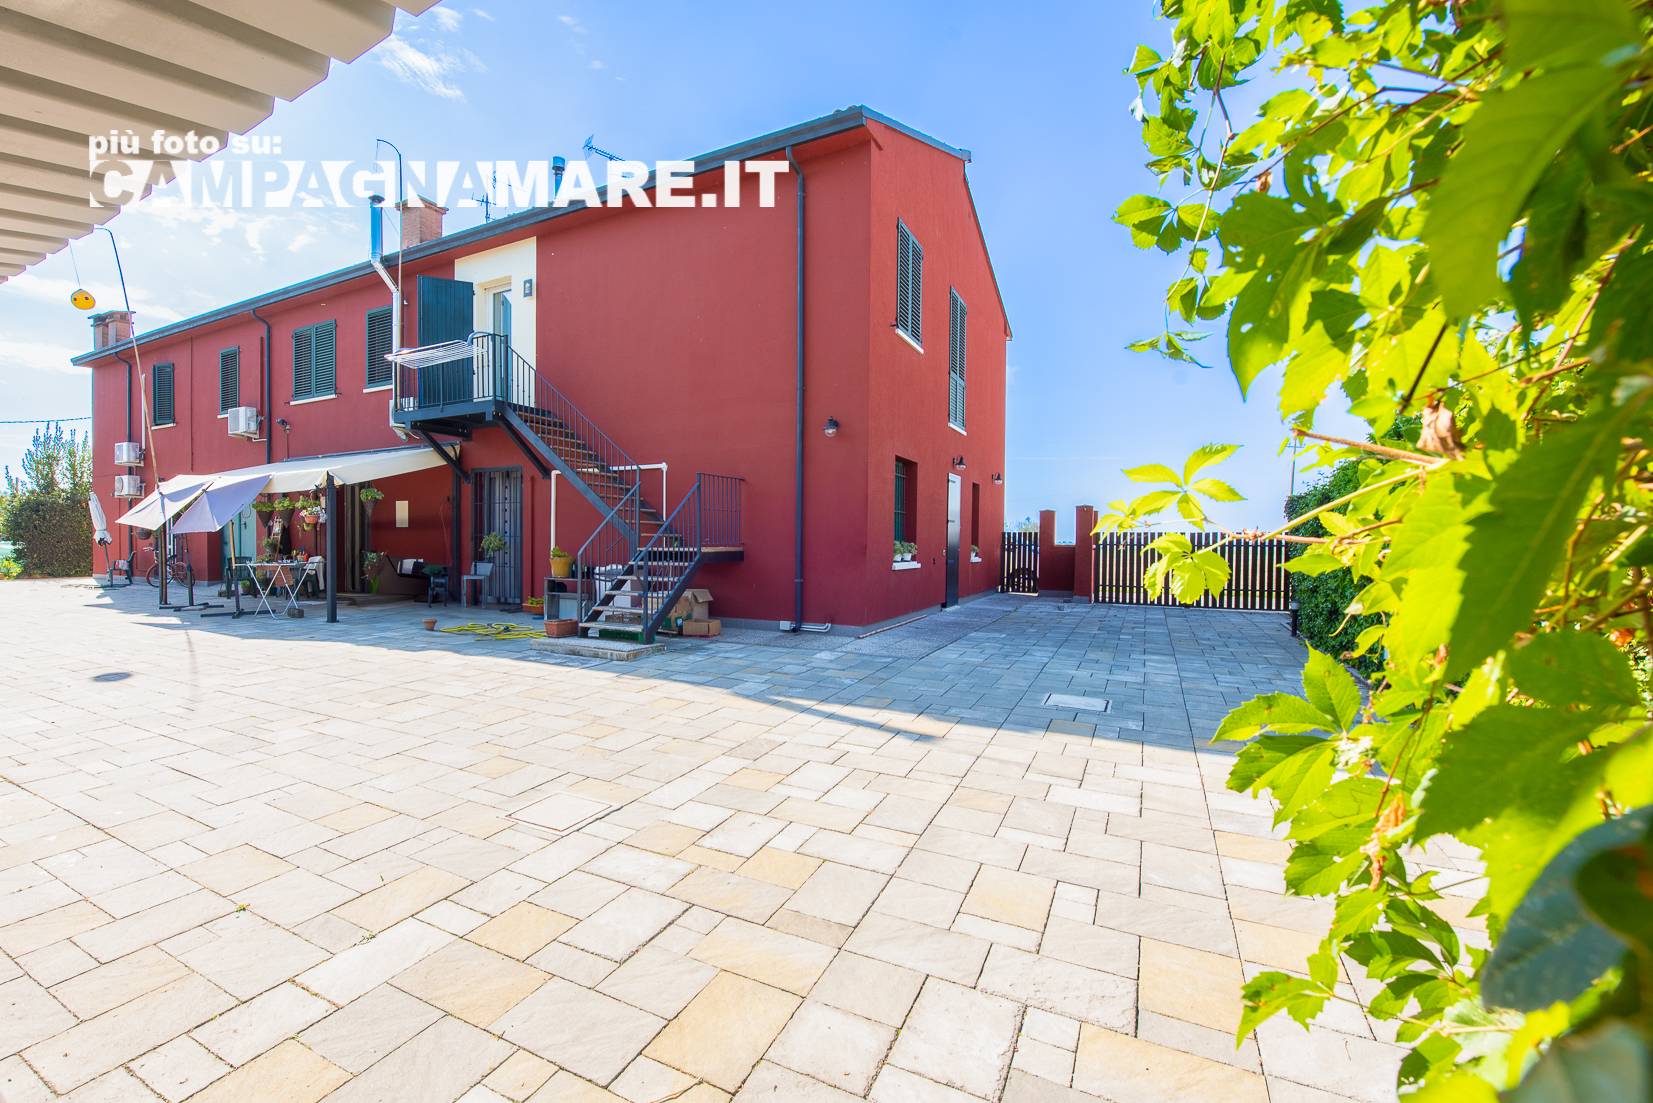 Rustico / Casale in vendita a Portomaggiore, 11 locali, prezzo € 250.000 | PortaleAgenzieImmobiliari.it